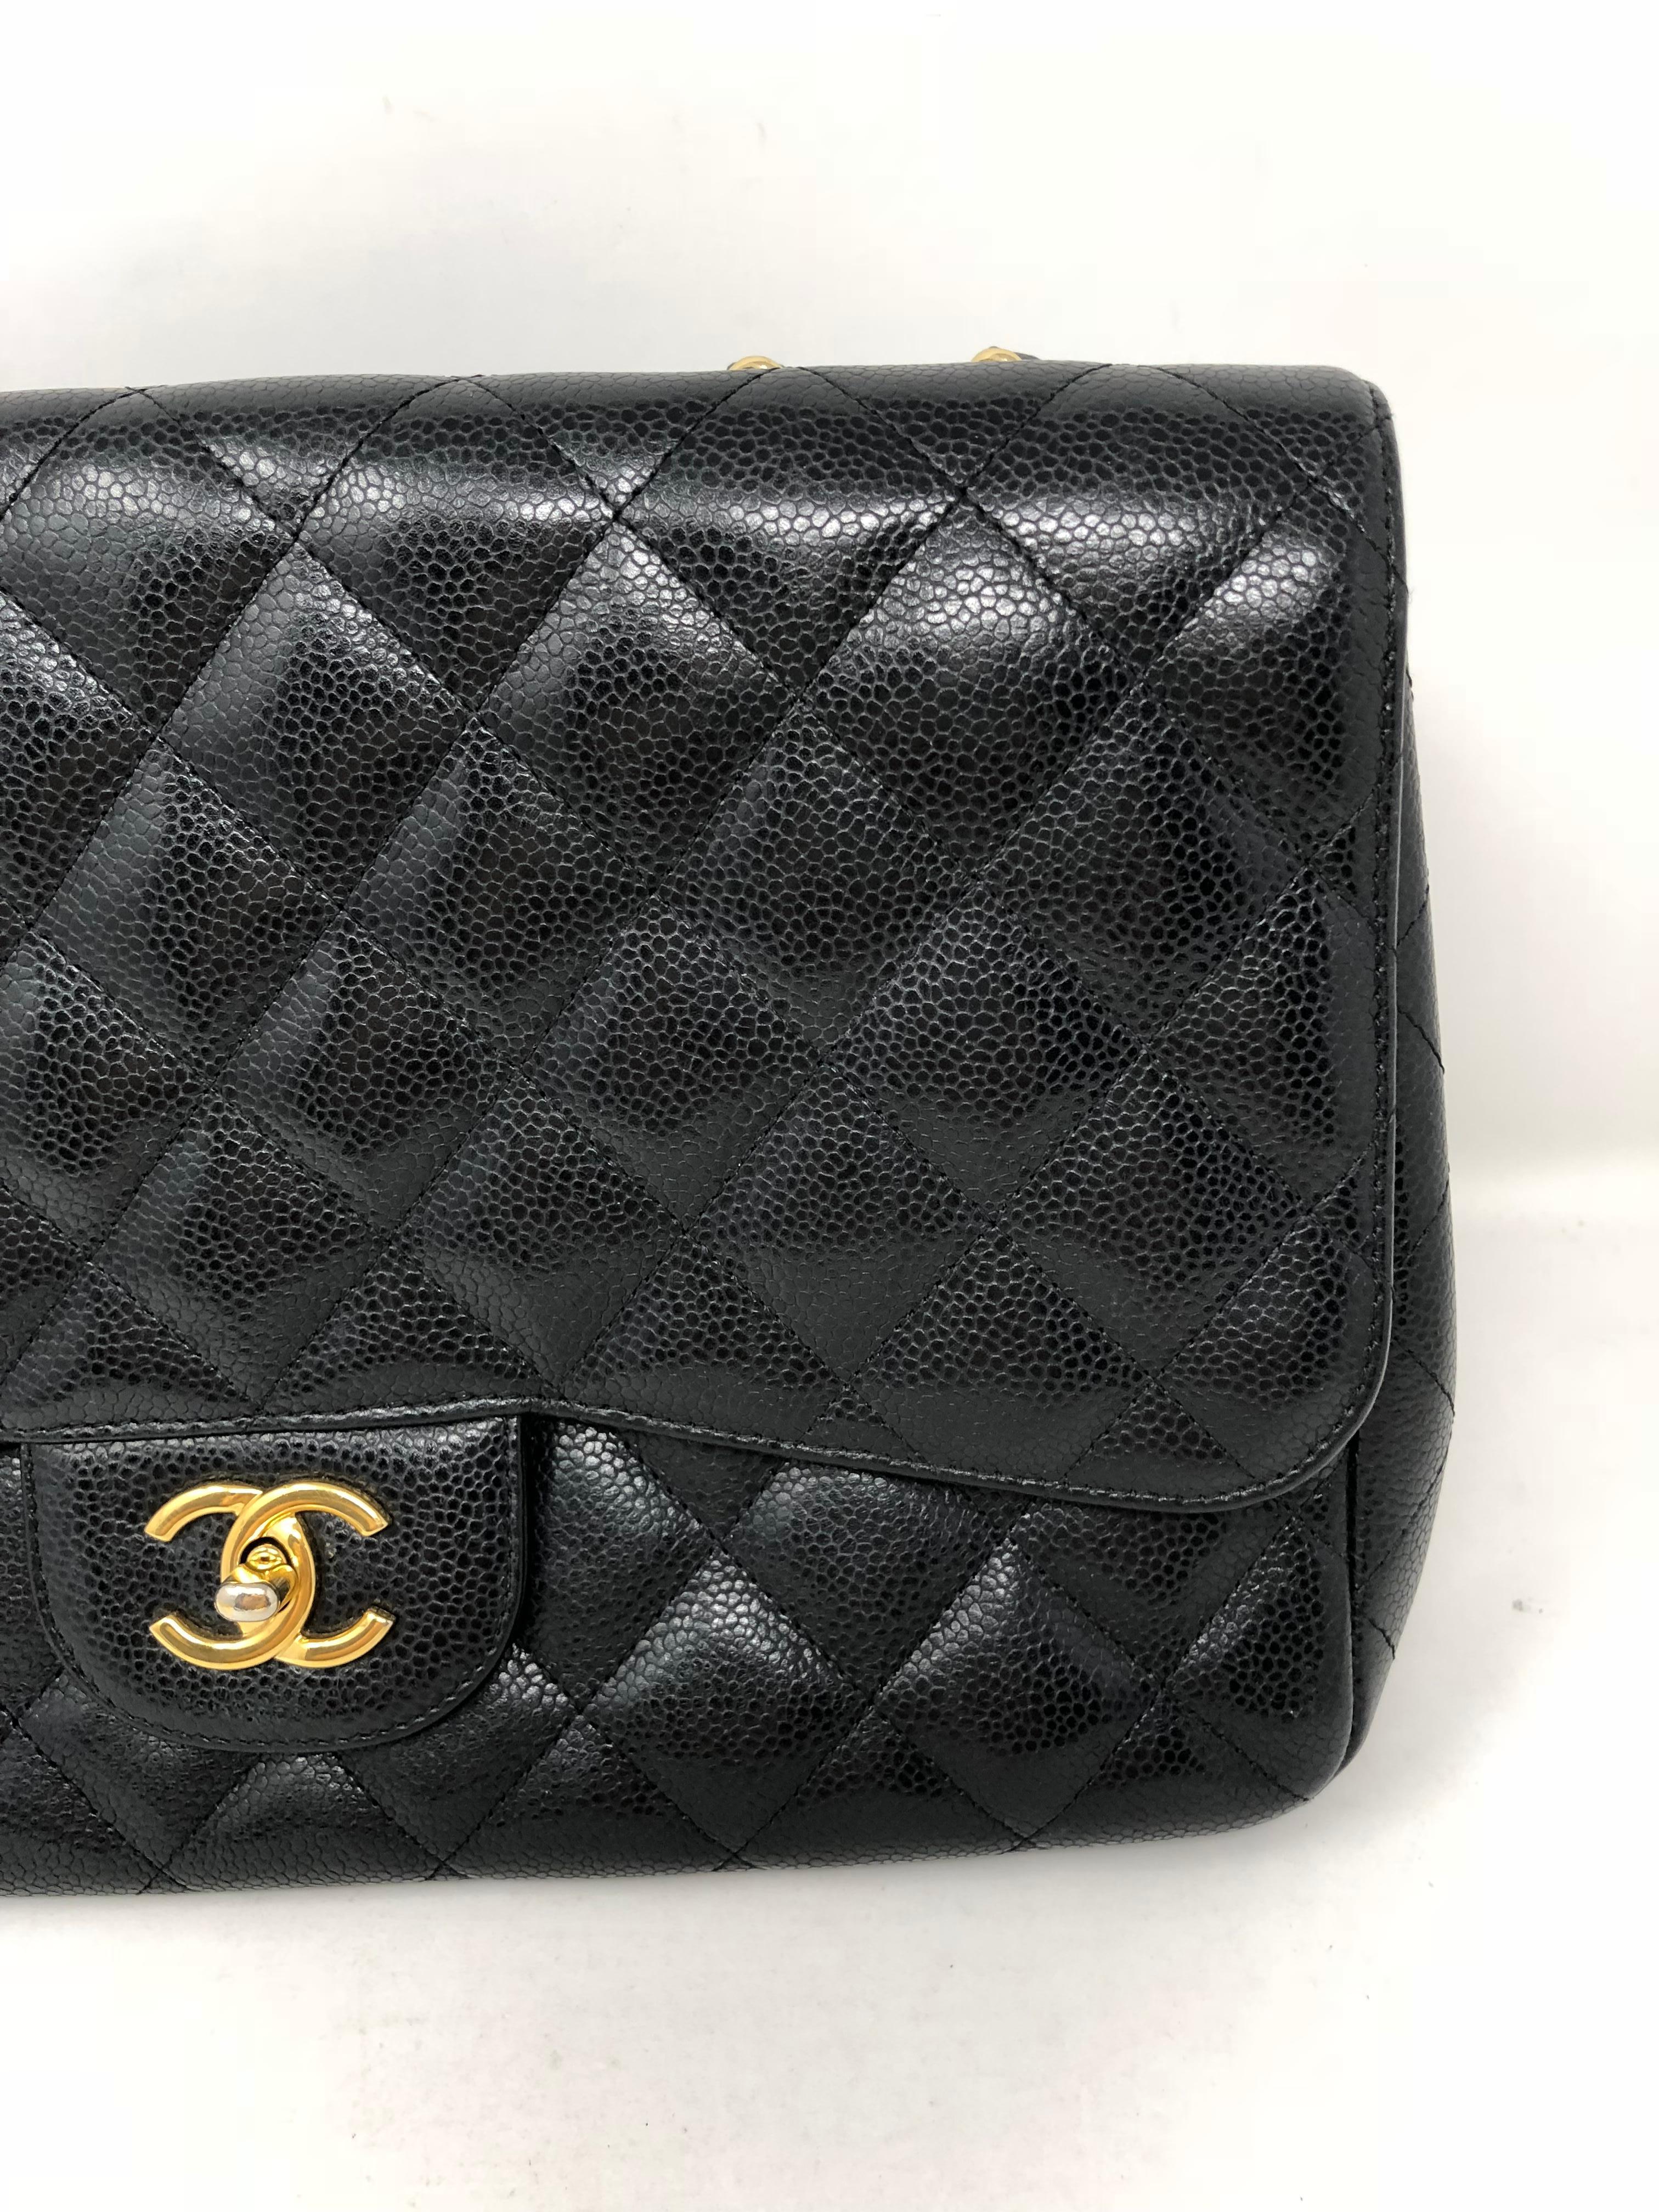 Chanel Black Caviar Jumbo Bag 2